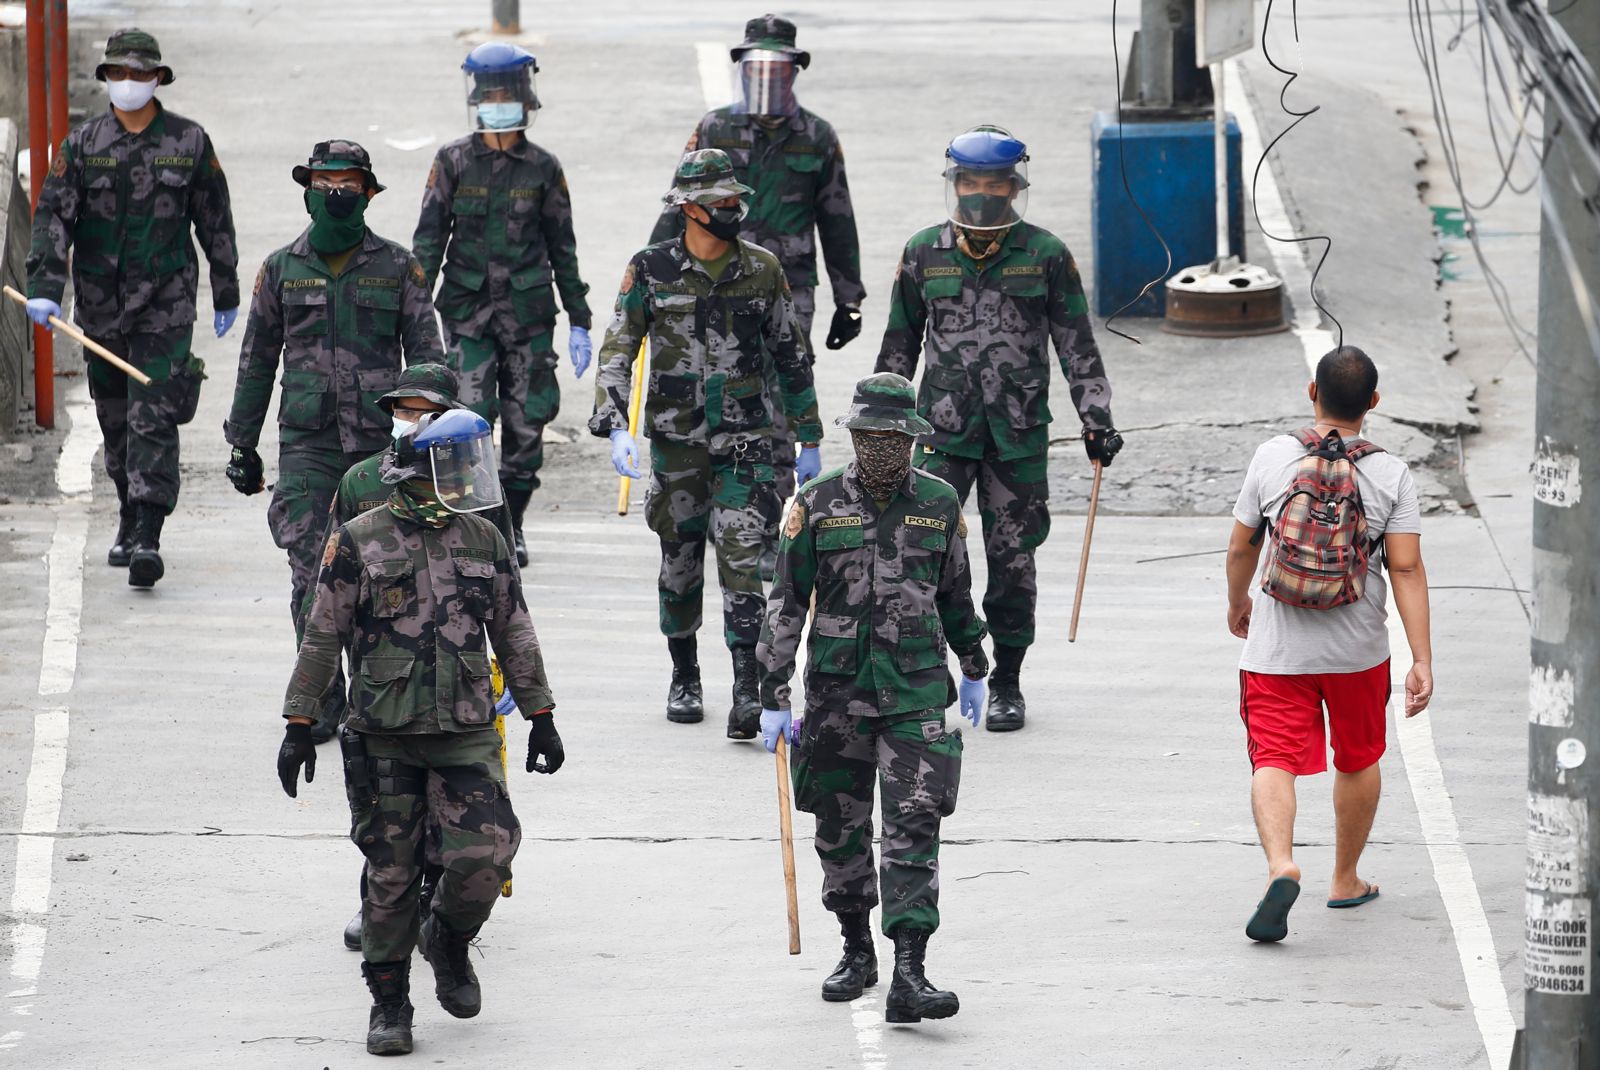 La politique étrangère américaine aggrave les atteintes aux droits humains aux Philippines pendant la pandémie de COVID